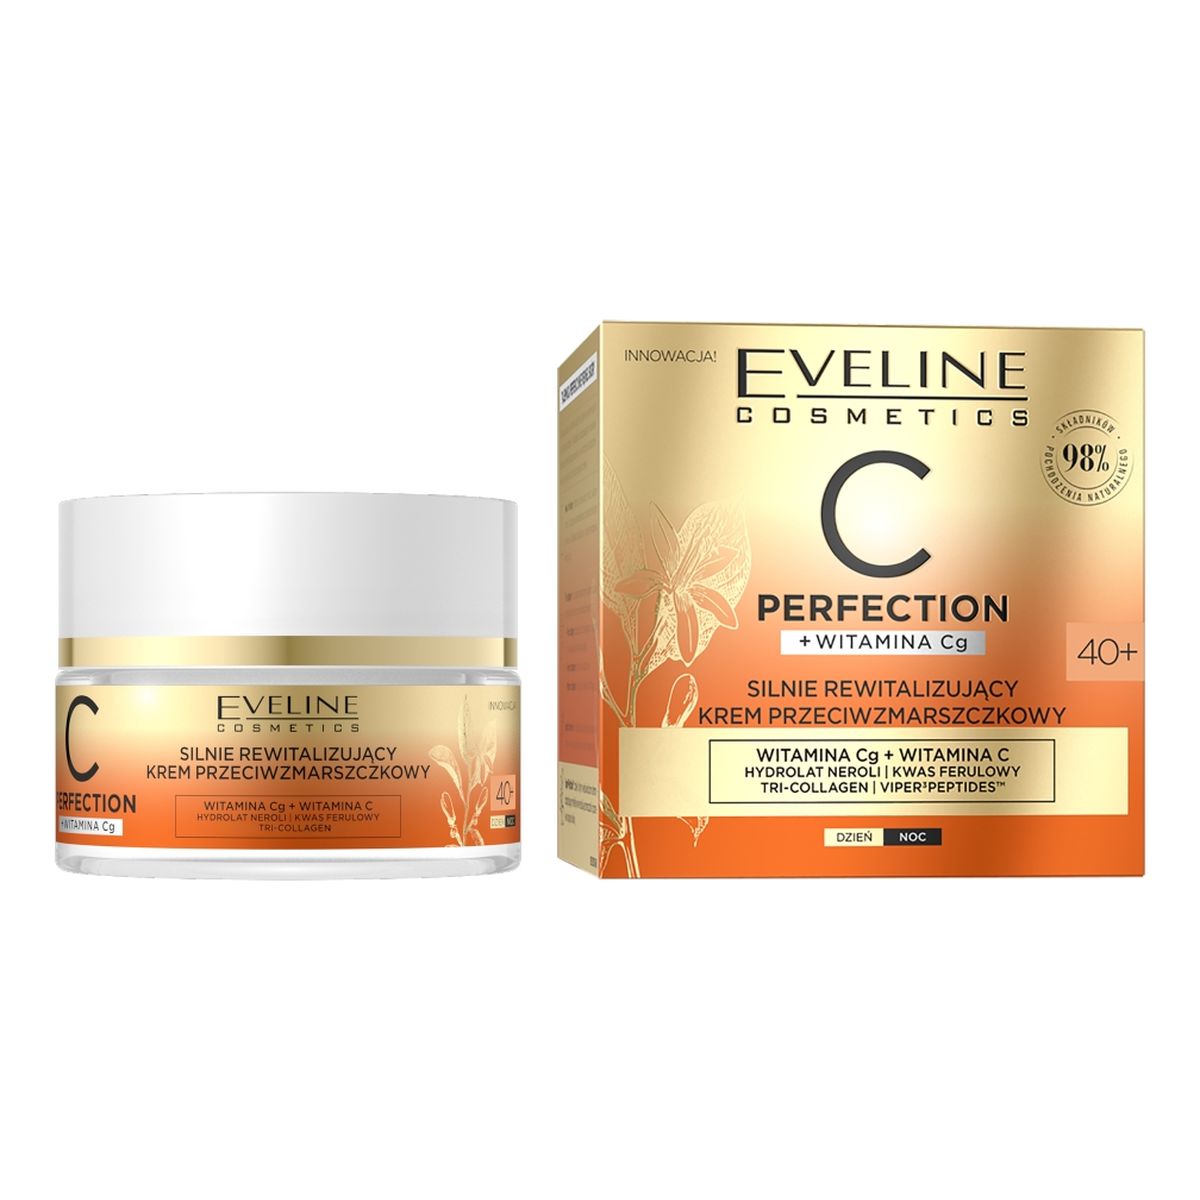 Eveline C-Perfection Rewitalizujący krem przeciwzmarszczkowy 40+ 50ml